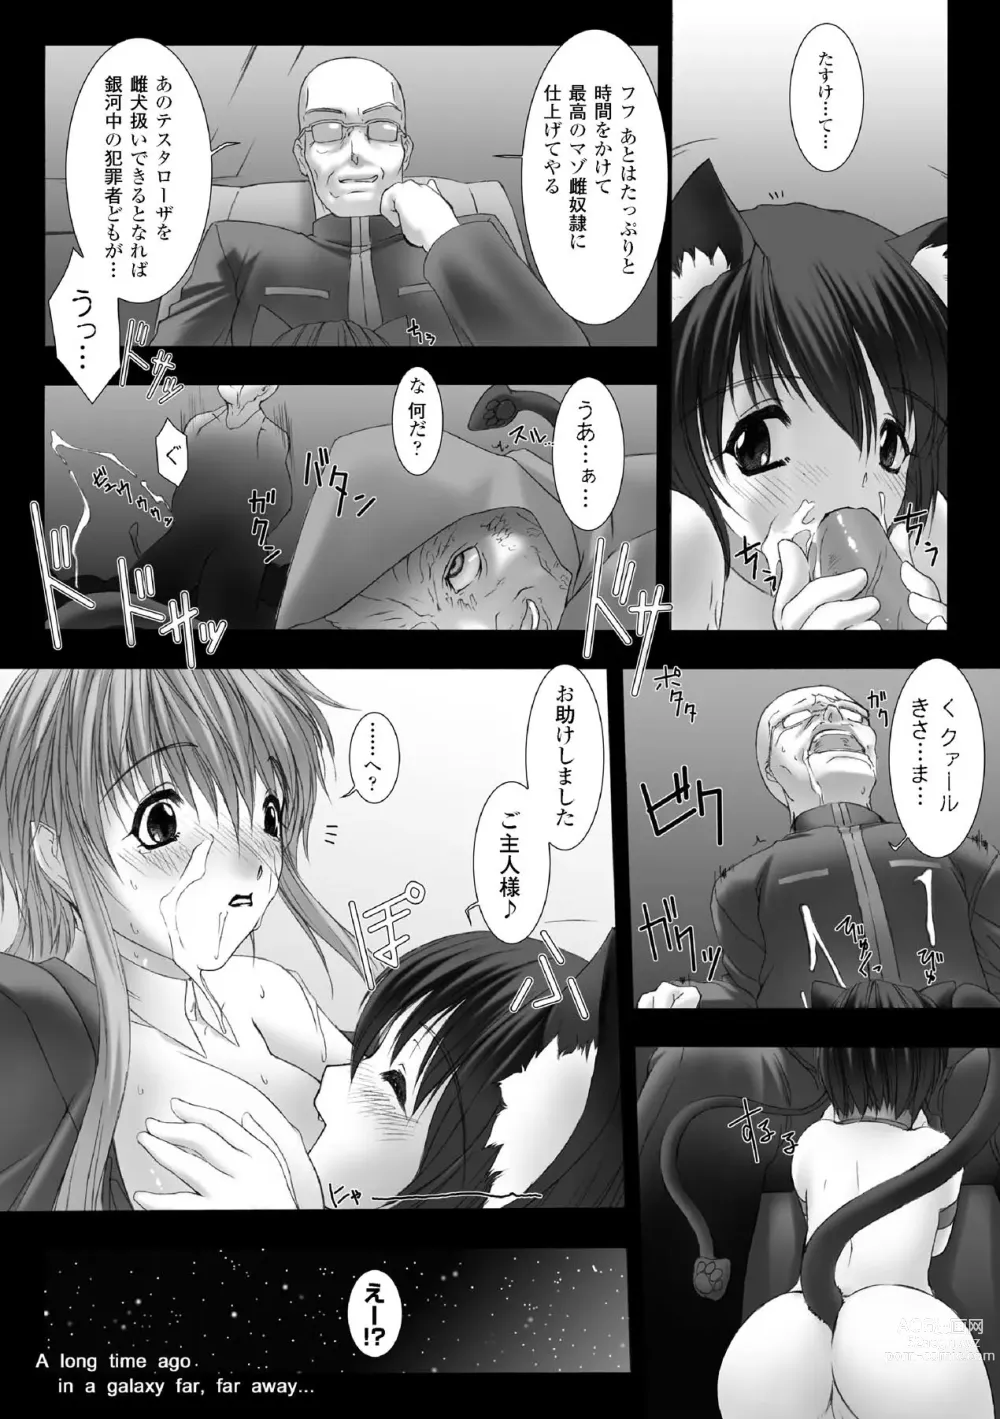 Page 158 of manga Feuerig